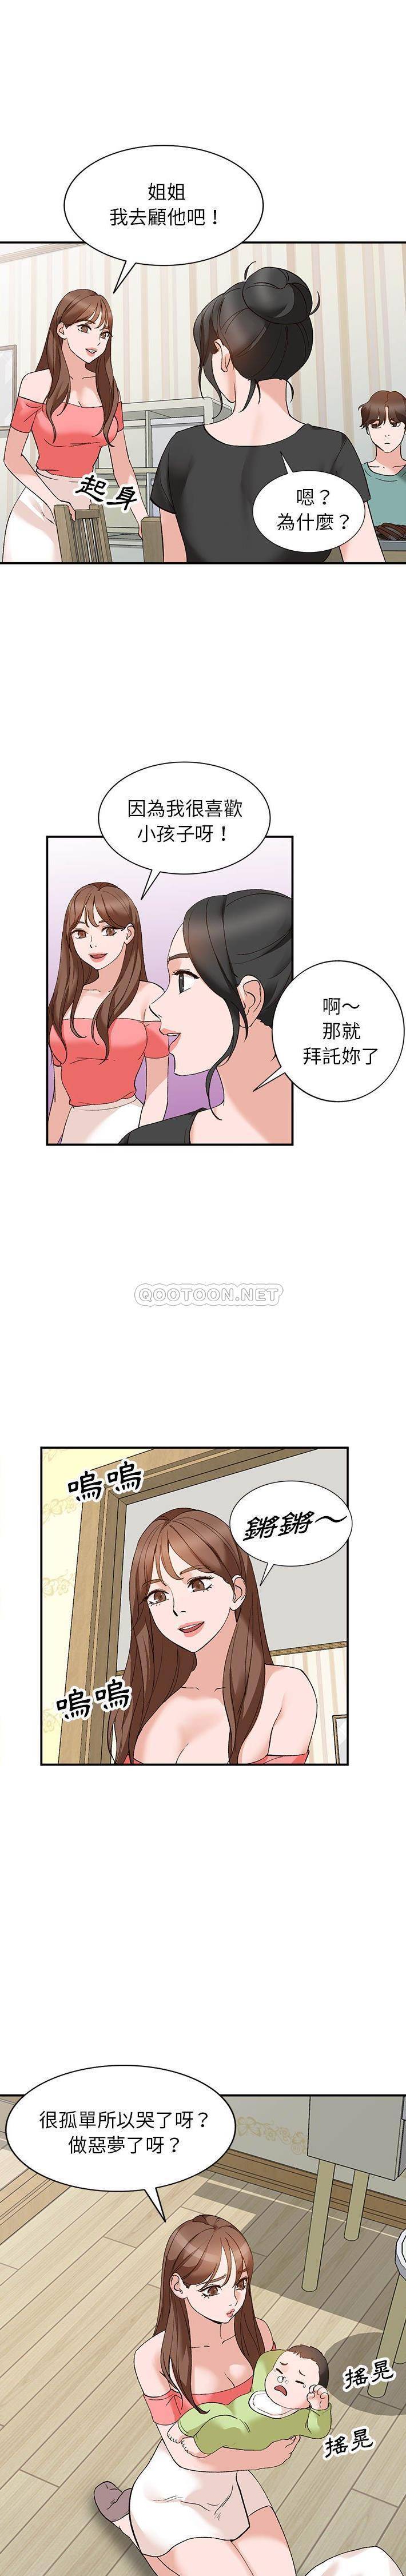 韩国污漫画 她們的小秘密(小鎮上的女人們) 第14话 1